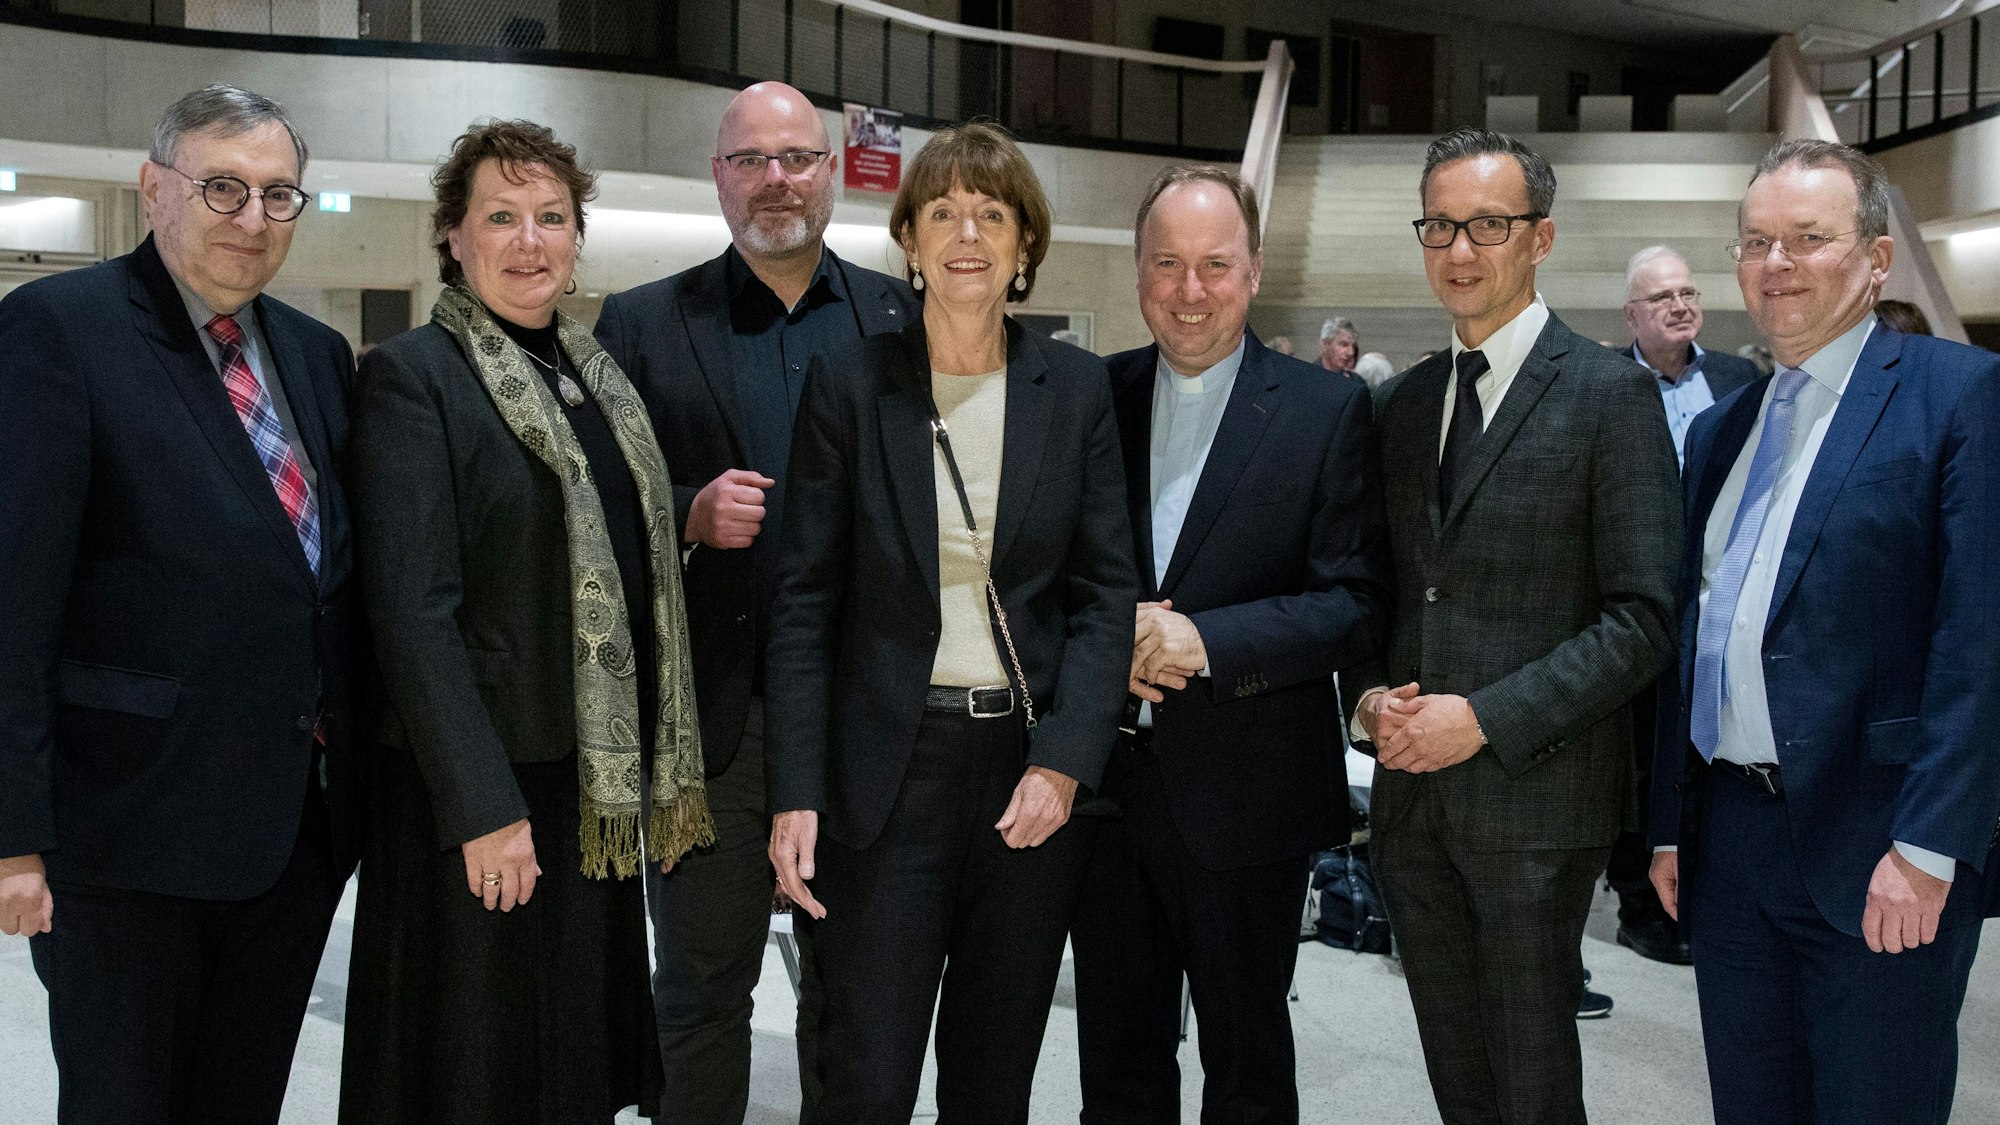 Abraham Lehrer, Anne Henk-Hollstein, Gregor Stiels, Henriette Reker, Robert Kleine, Falk Schnabel und Bernhard Seiger (von links nach rechts)